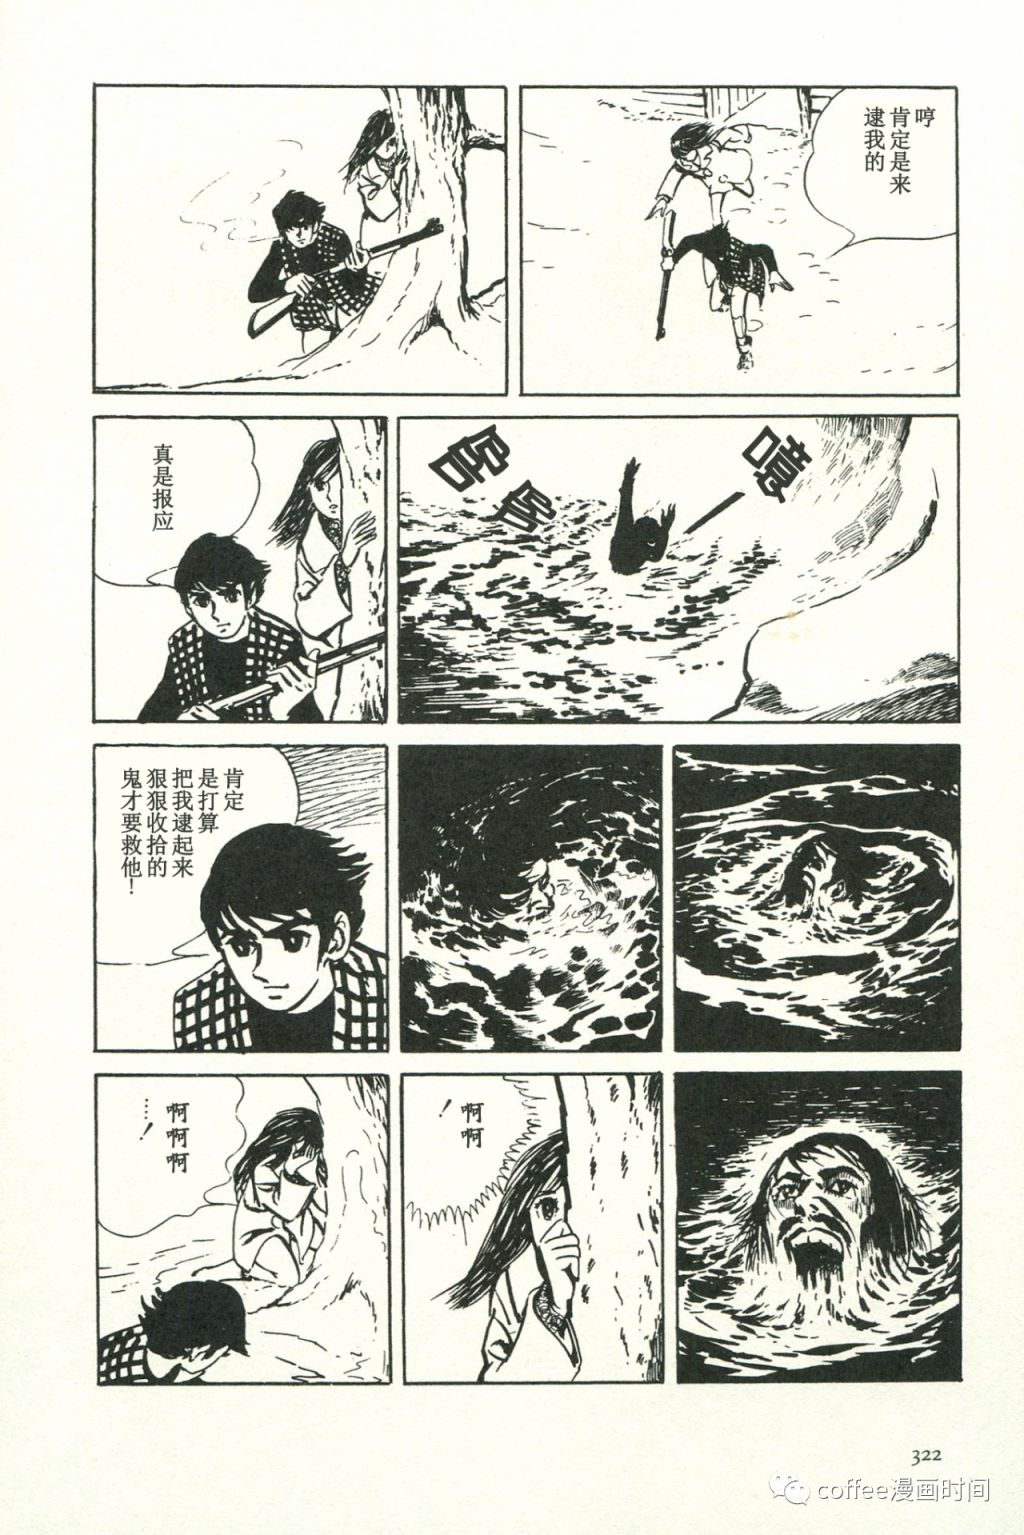 日本短篇漫畫傑作集 - 池上遼一《禁獵區》 - 6